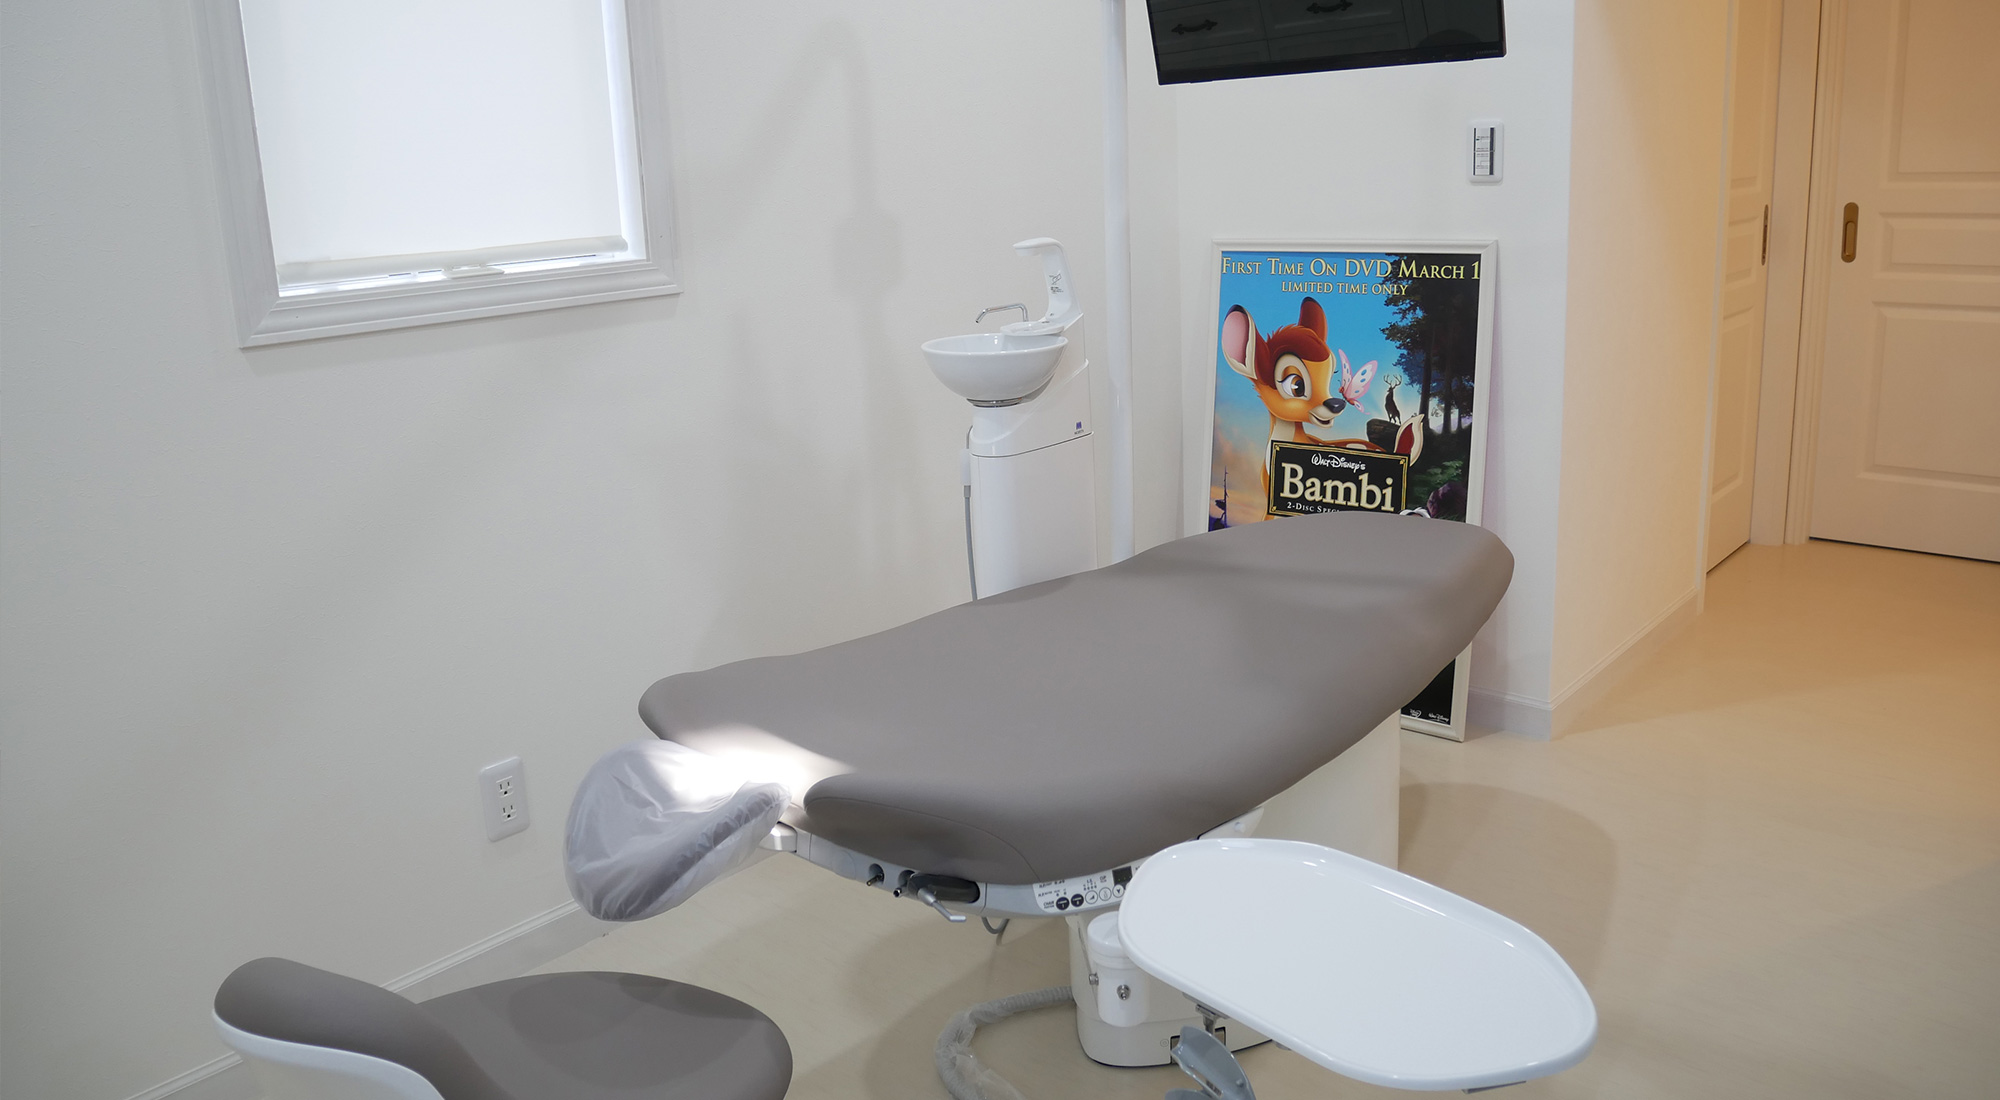 歯科医院診療室